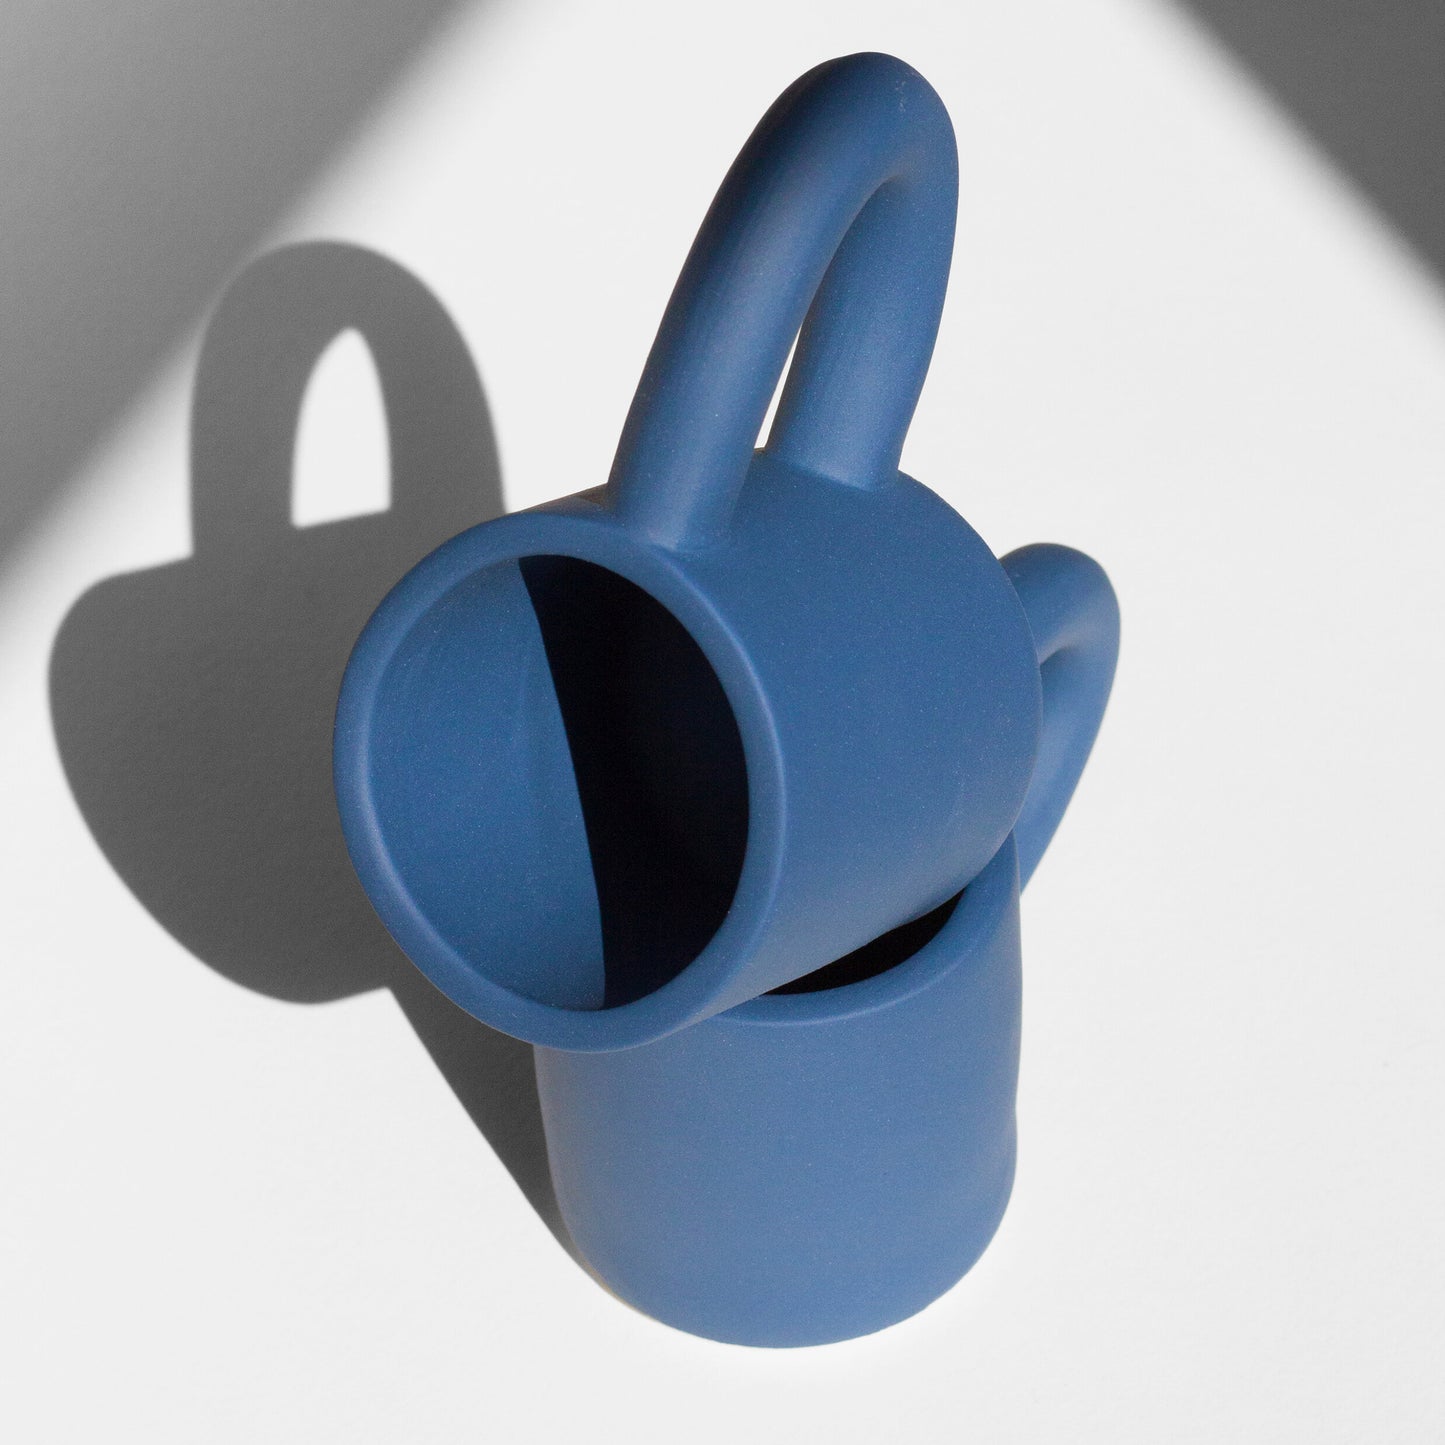 Cobalt Sturdy Mug